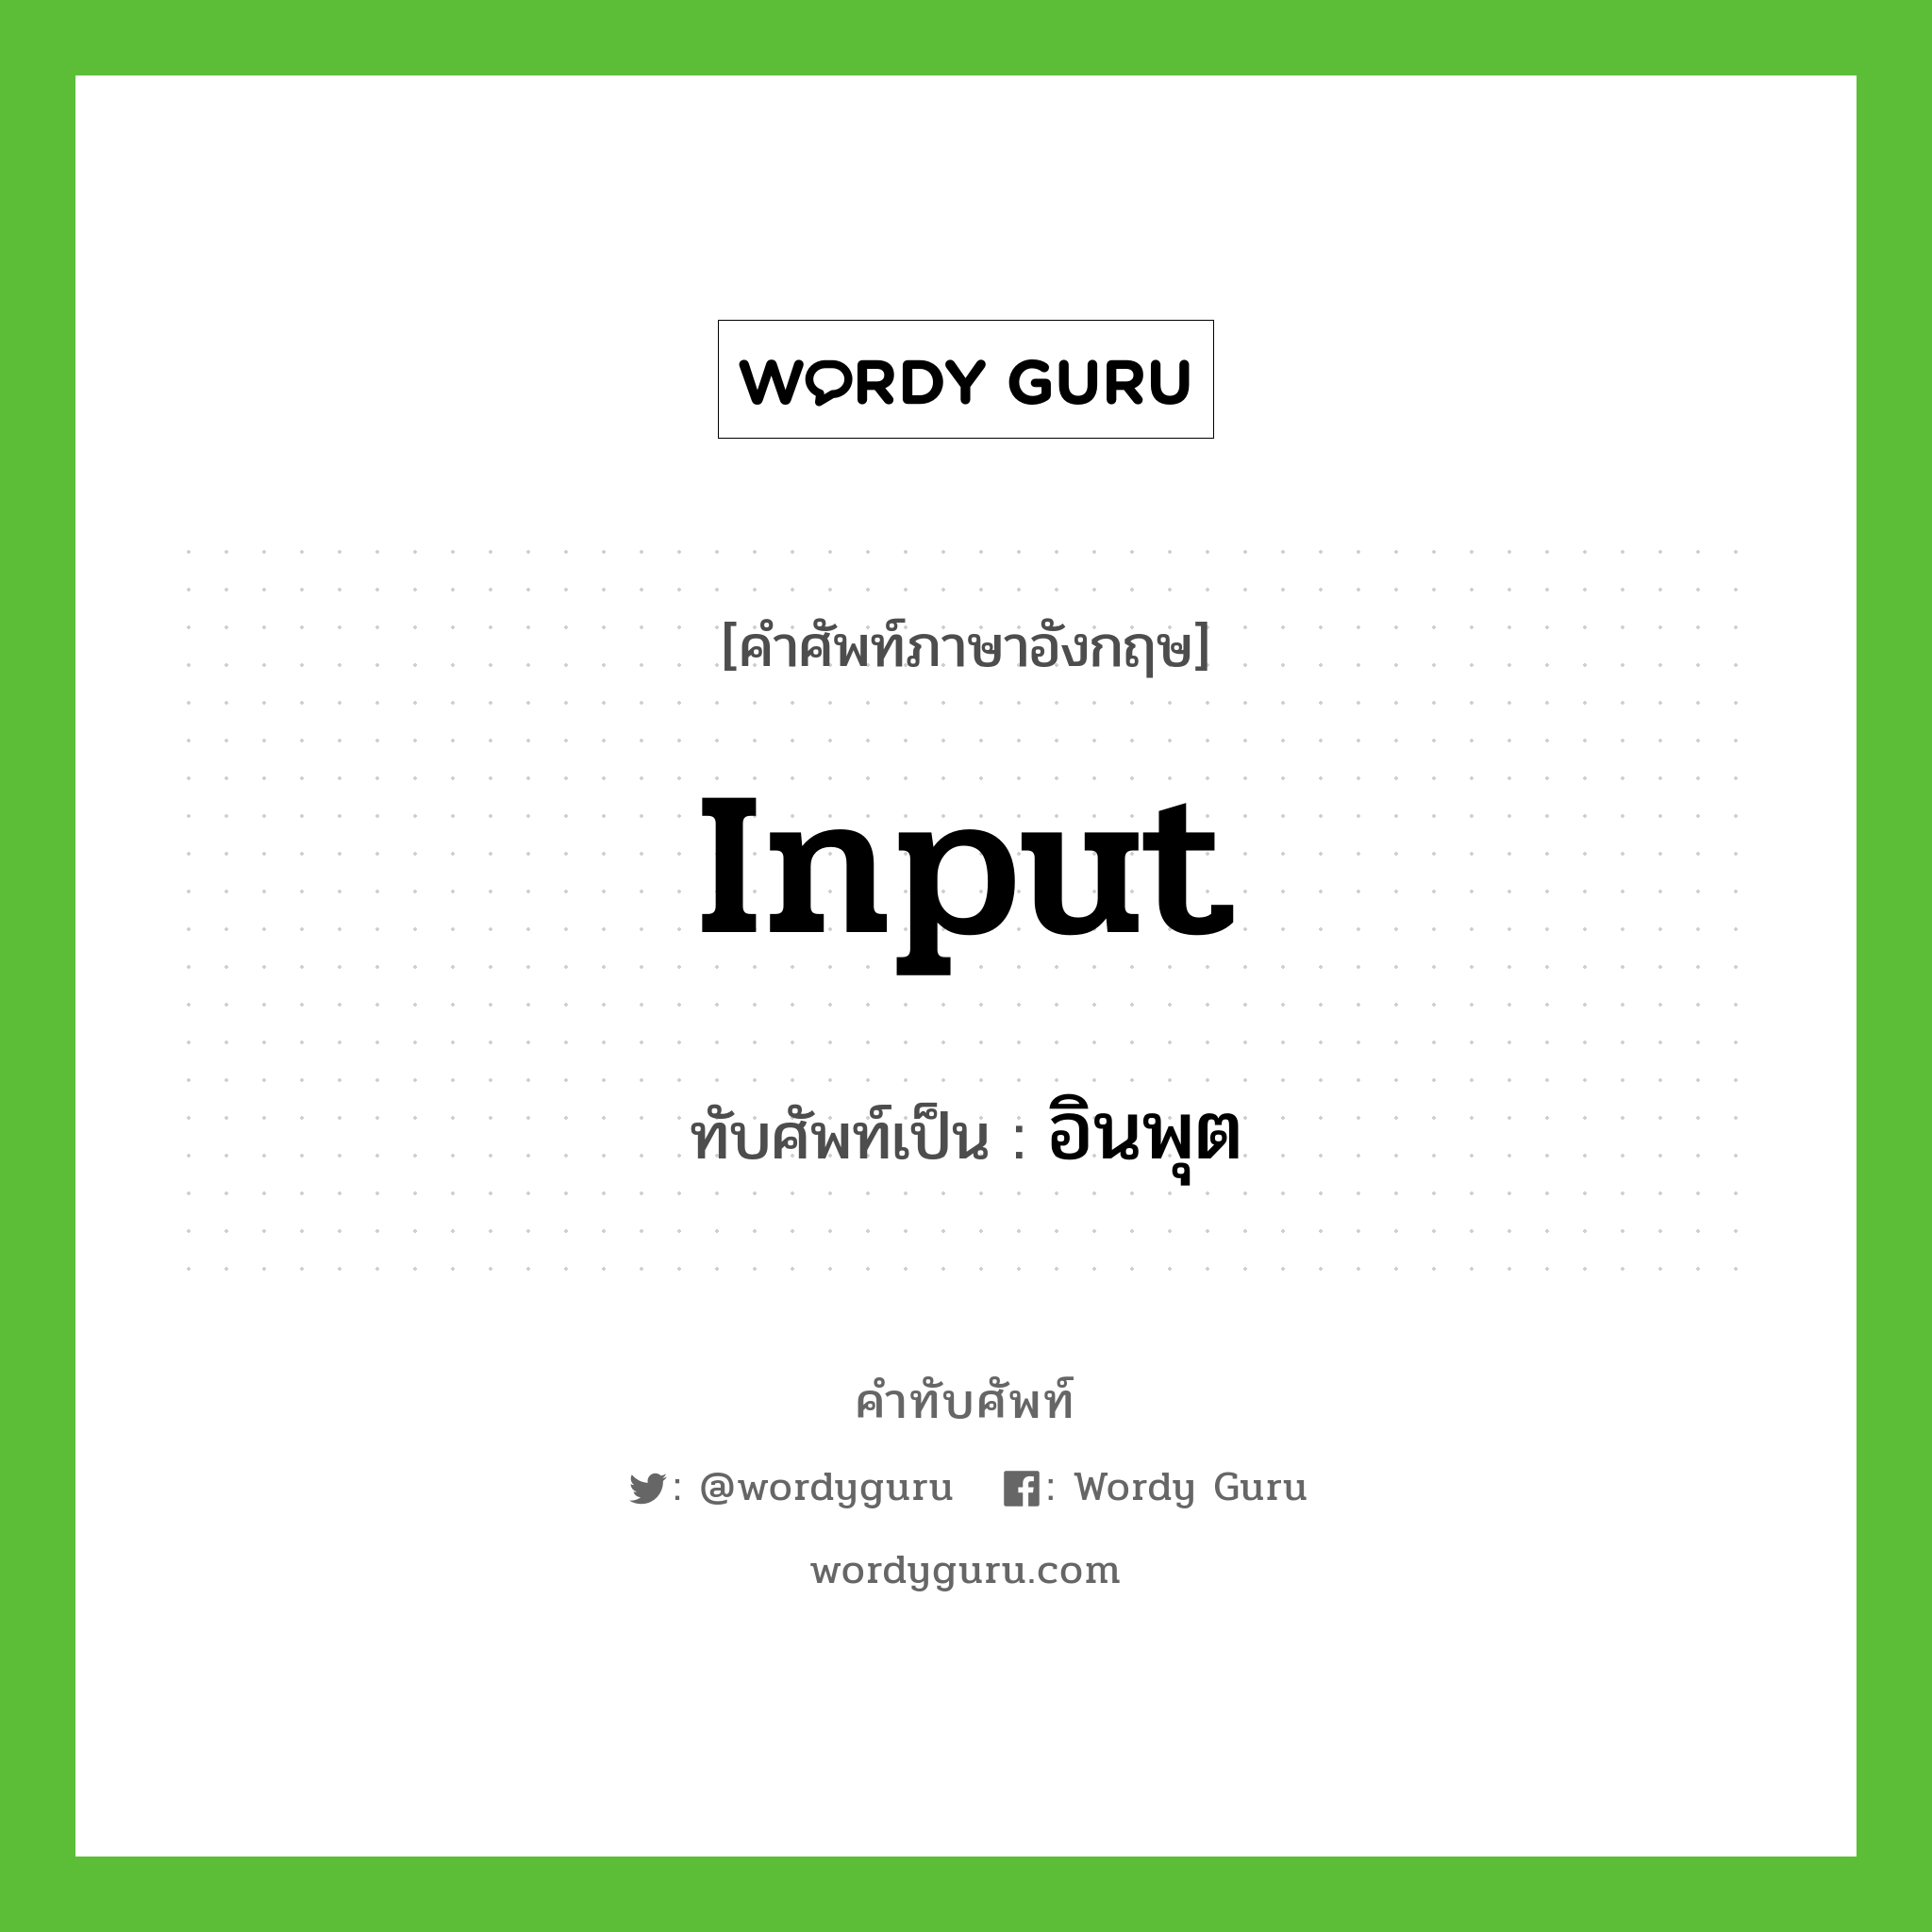 input เขียนเป็นคำไทยว่าอะไร?, คำศัพท์ภาษาอังกฤษ input ทับศัพท์เป็น อินพุต